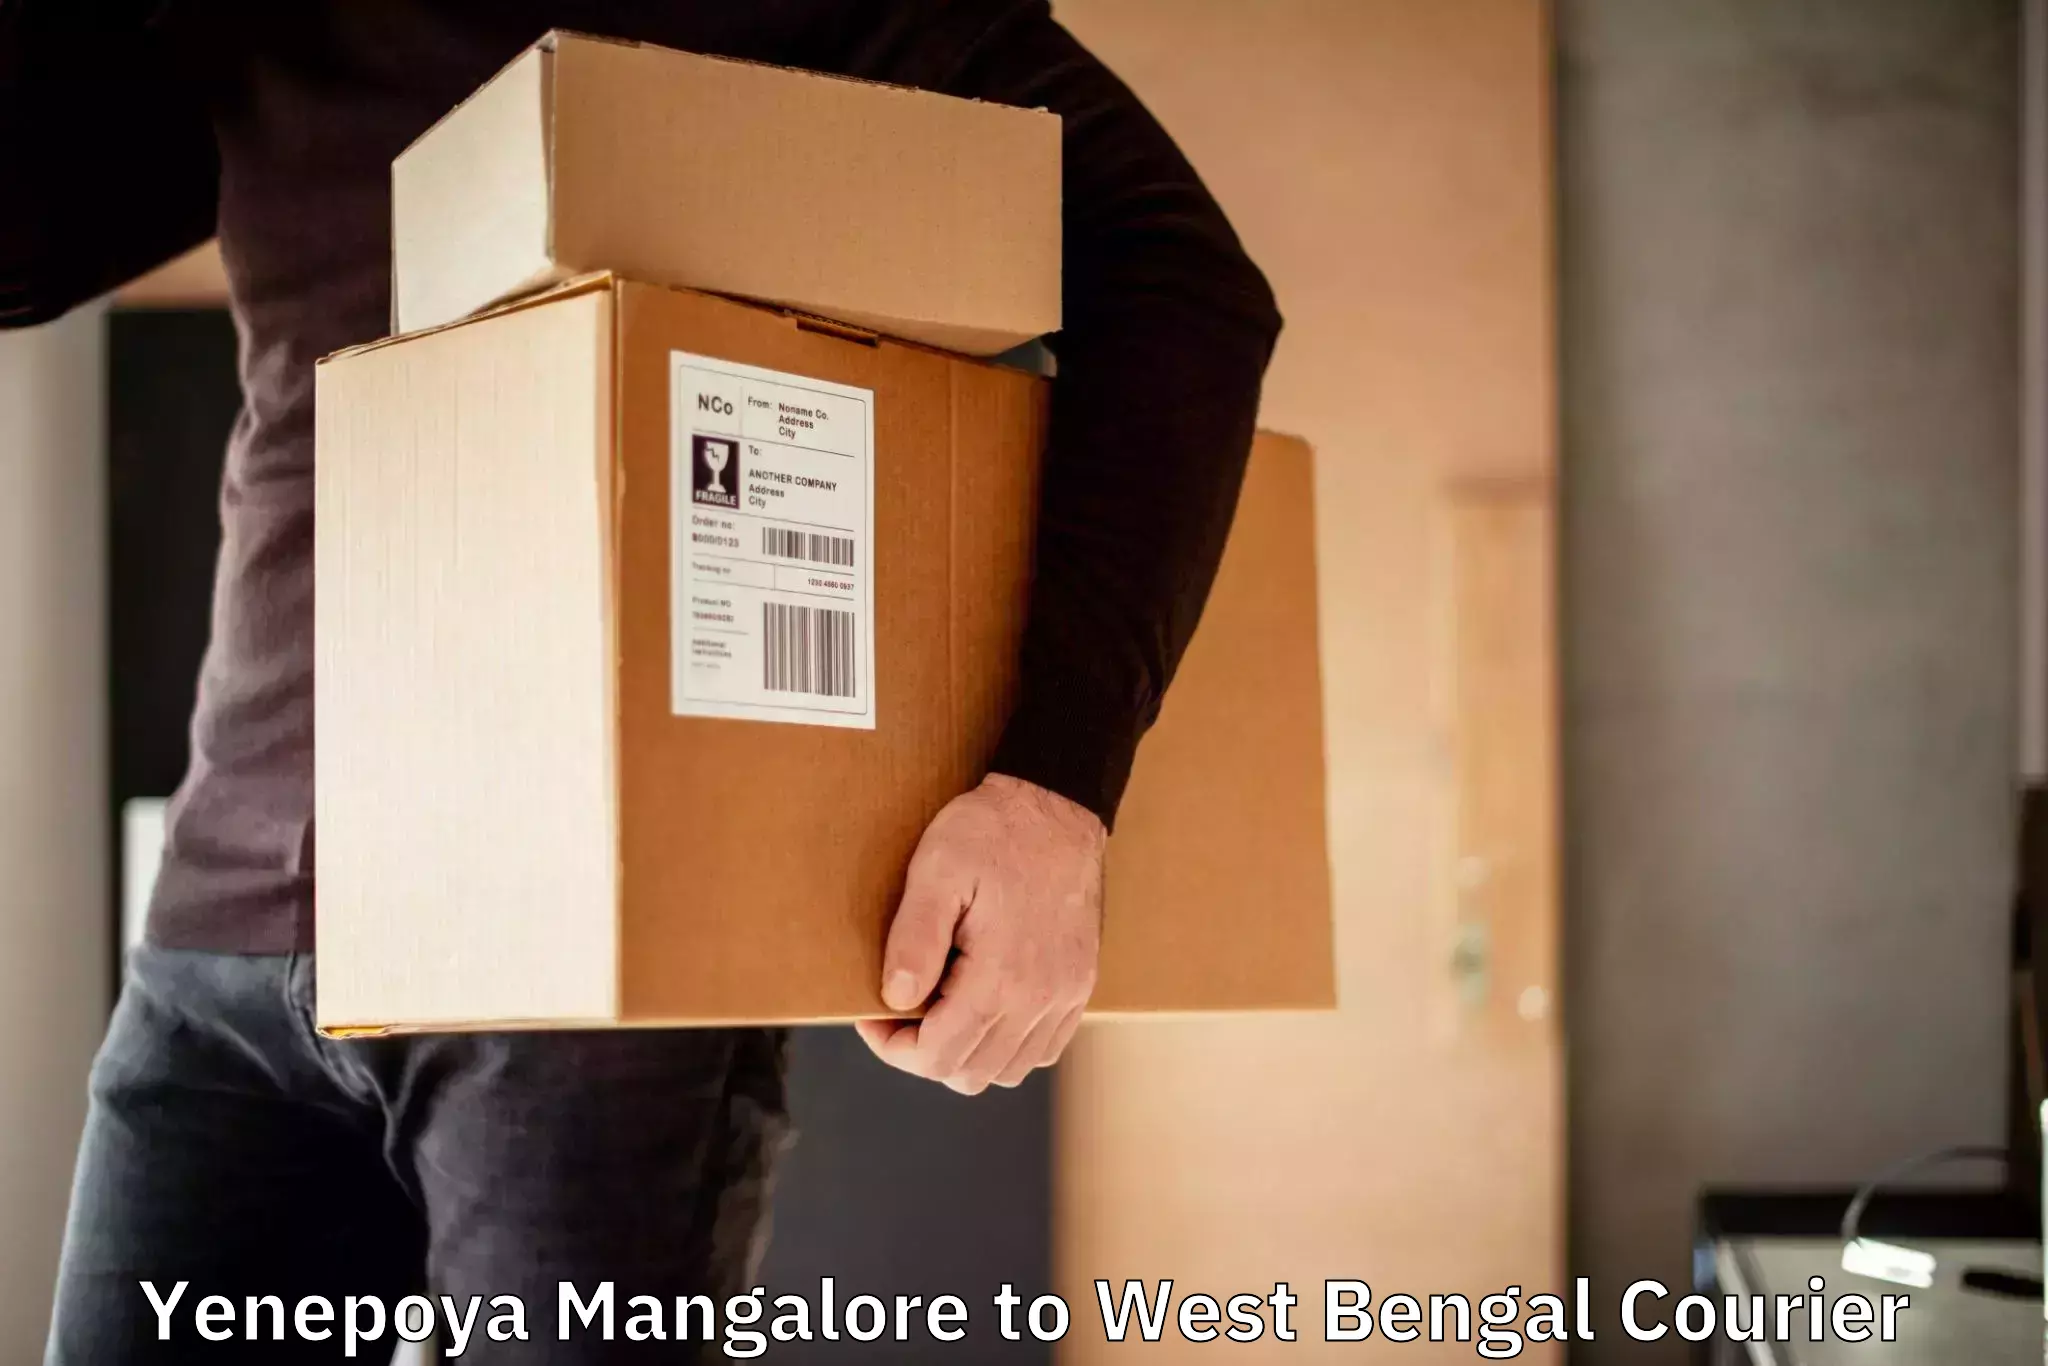 Urgent courier needs Yenepoya Mangalore to Budge Budge